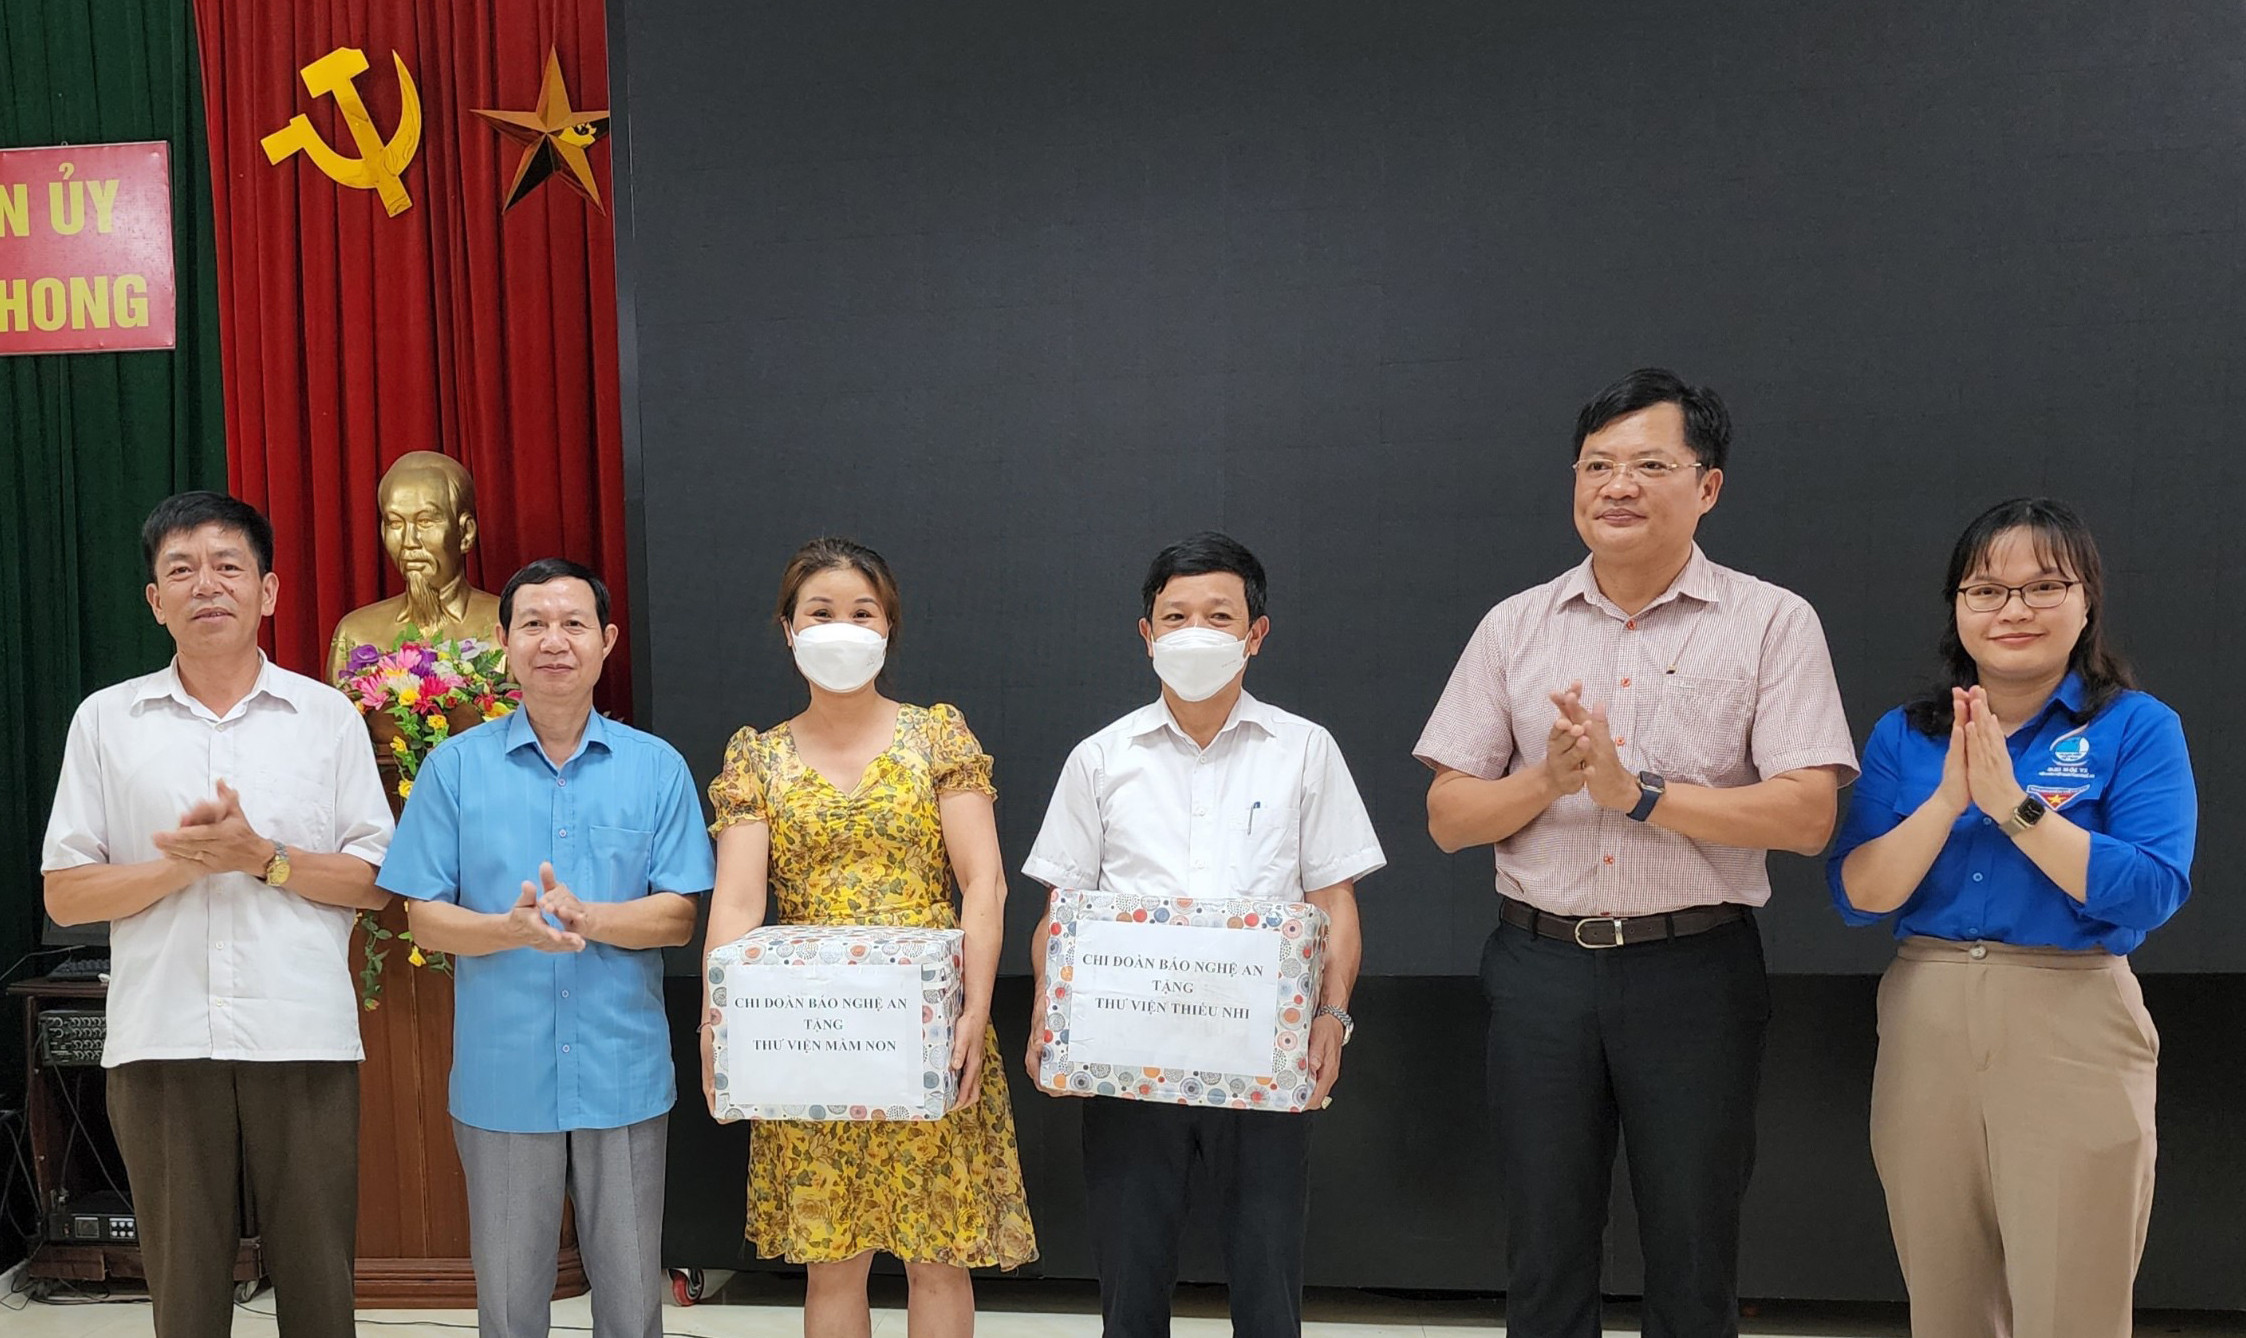 Tiếp nhận món quà ý nghĩa, đại diện Phòng Giáo dục huyện Quế Phong và các trường học hứa sẽ sử dụng hiệu quả số sách nhận được, bồi dưỡng tình yêu với sách cho các em học sinh. Ảnh: NL